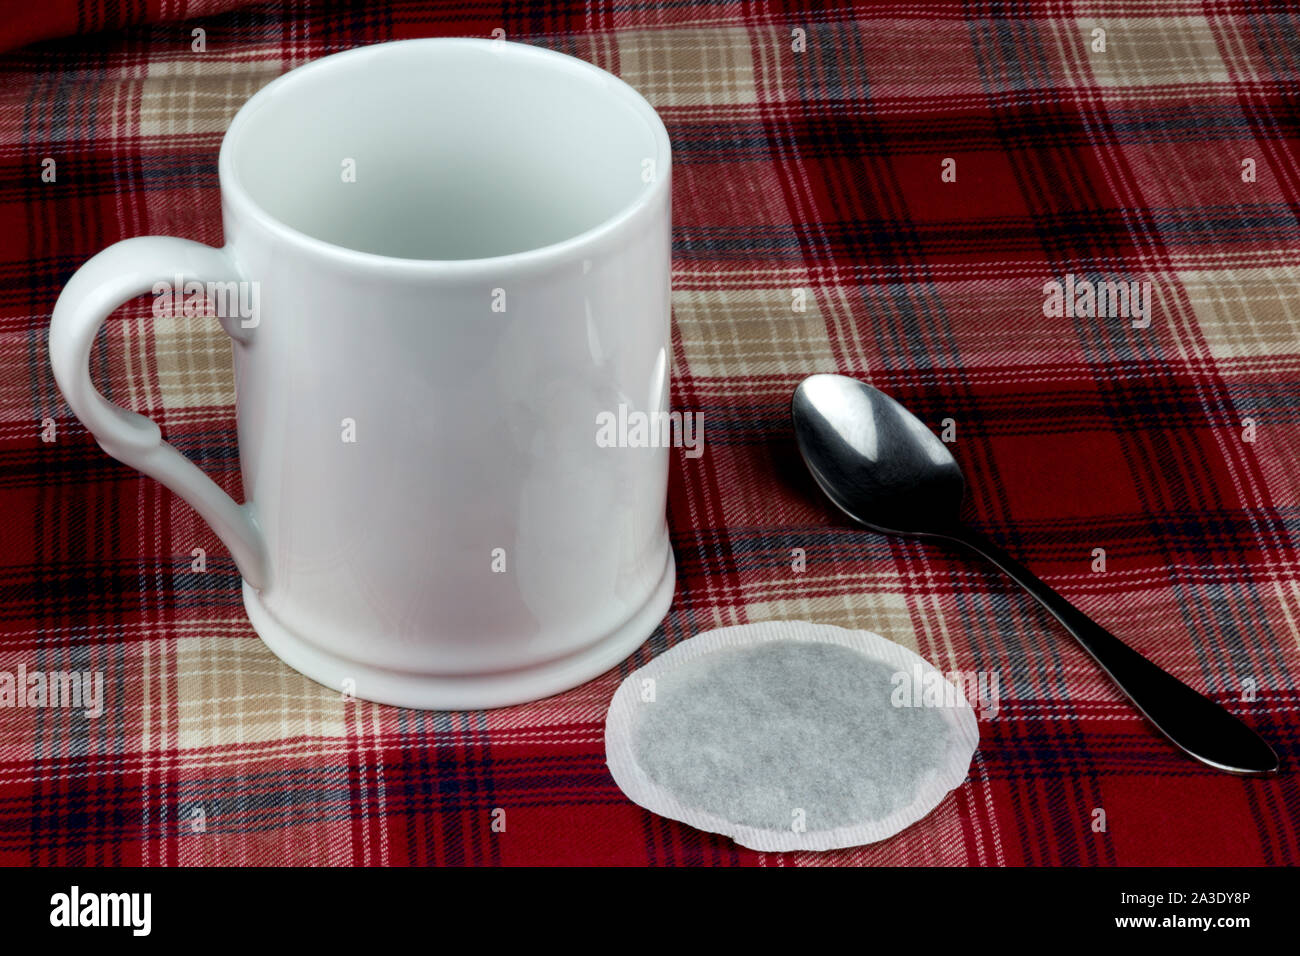 Kaffee Tasse mit Löffel und Tee Beutel auf tartan Tischdecke Stockfoto